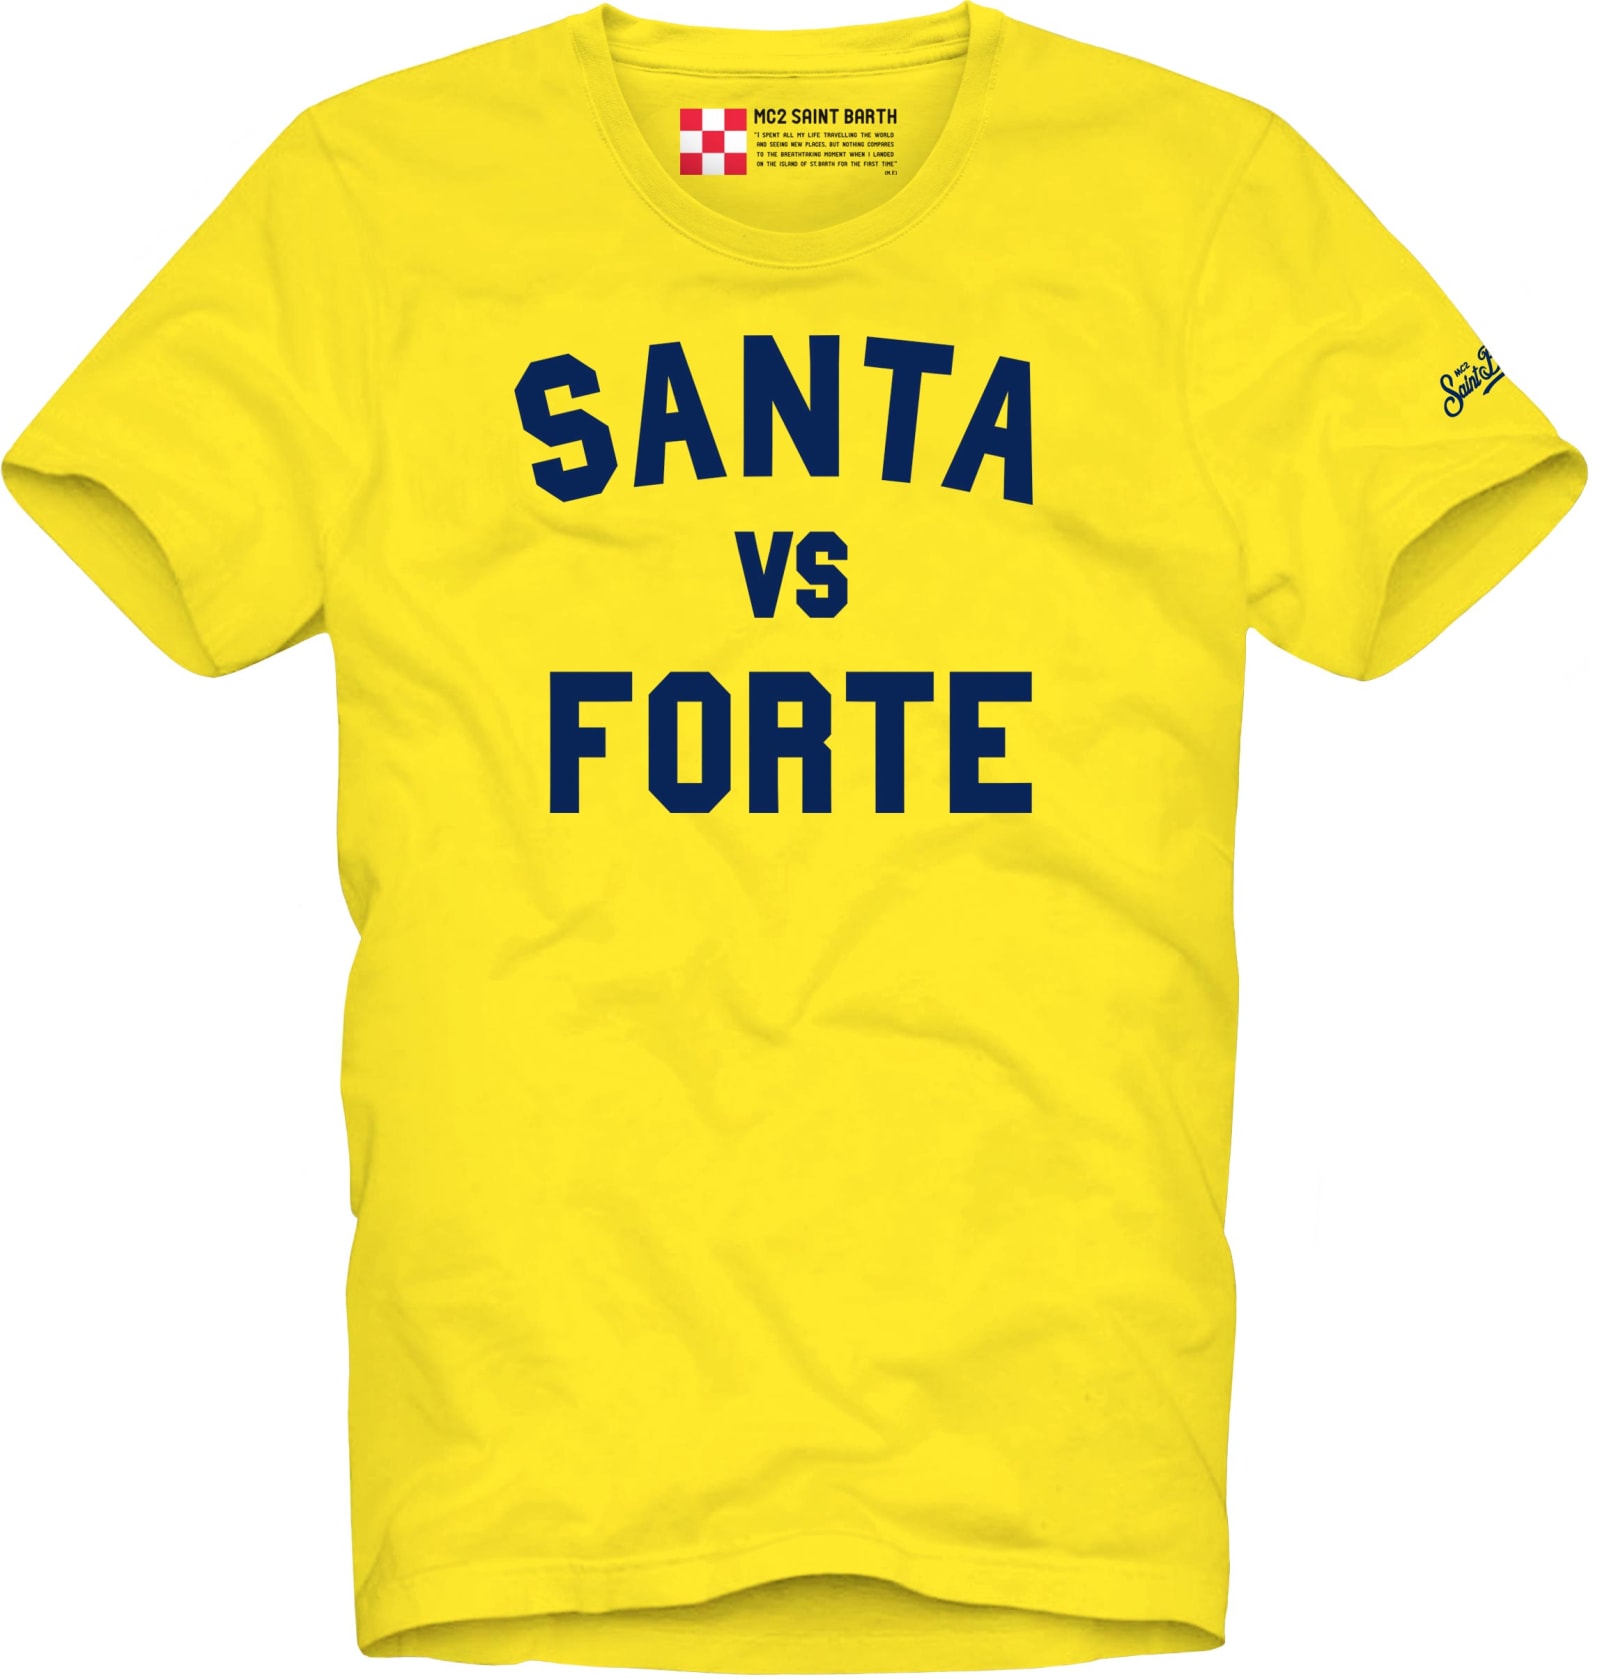 MC2 Saint Barth Santa Vs Forte Printed Man T-shirt